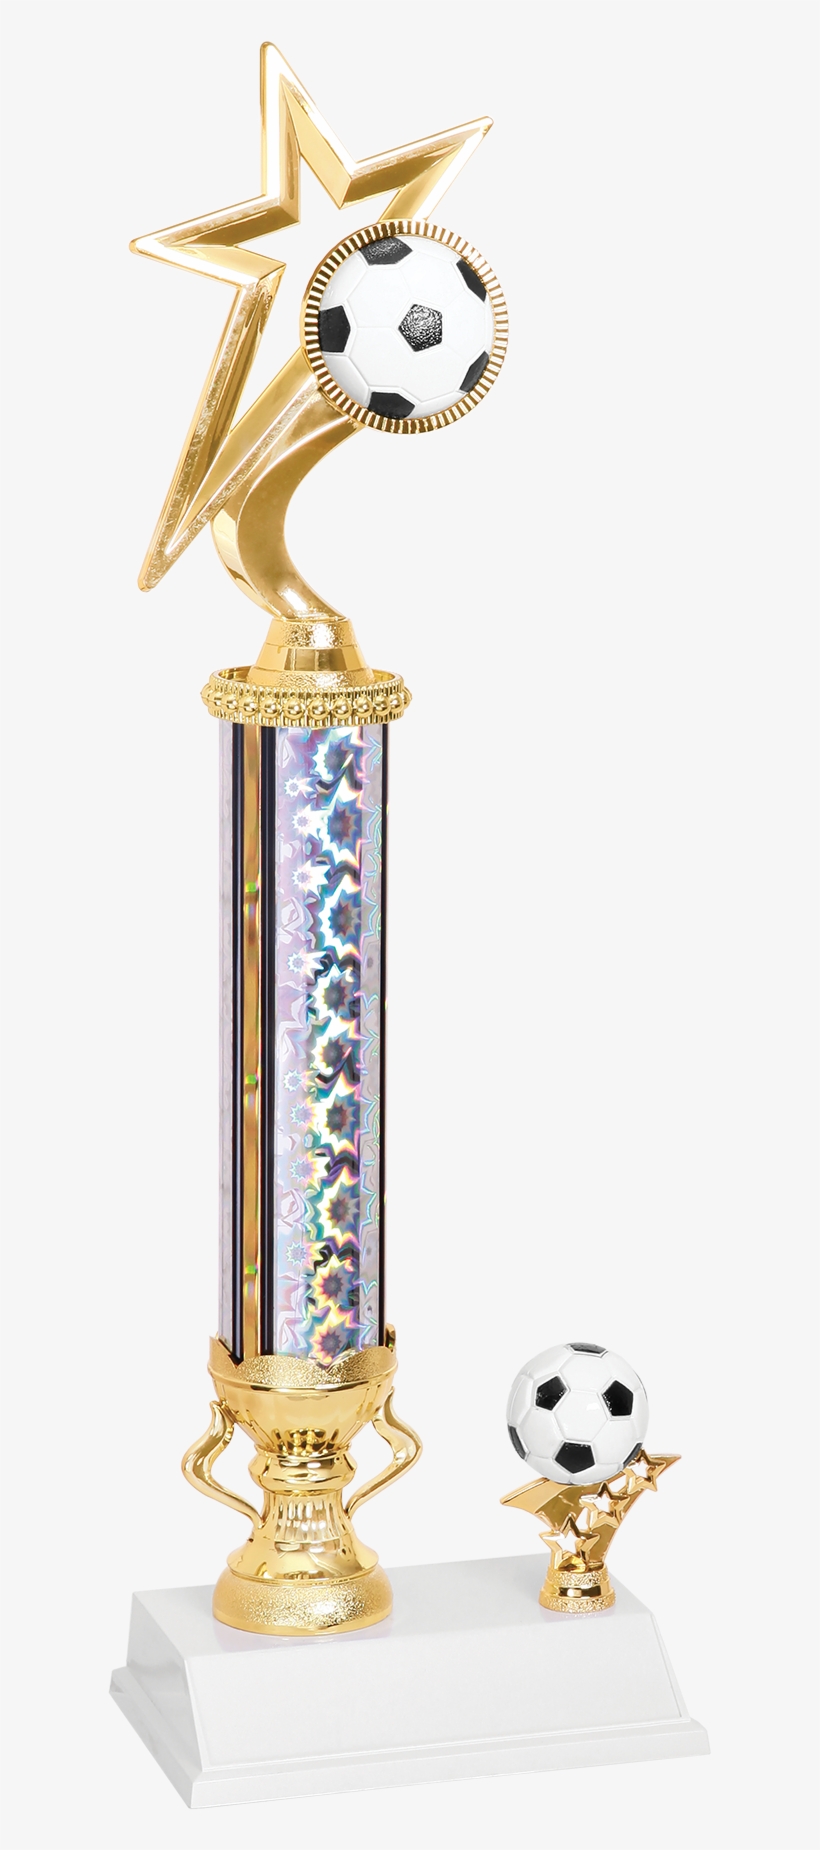 Gold Star Soccer Trophy - Soccer Trophy, transparent png #1187685